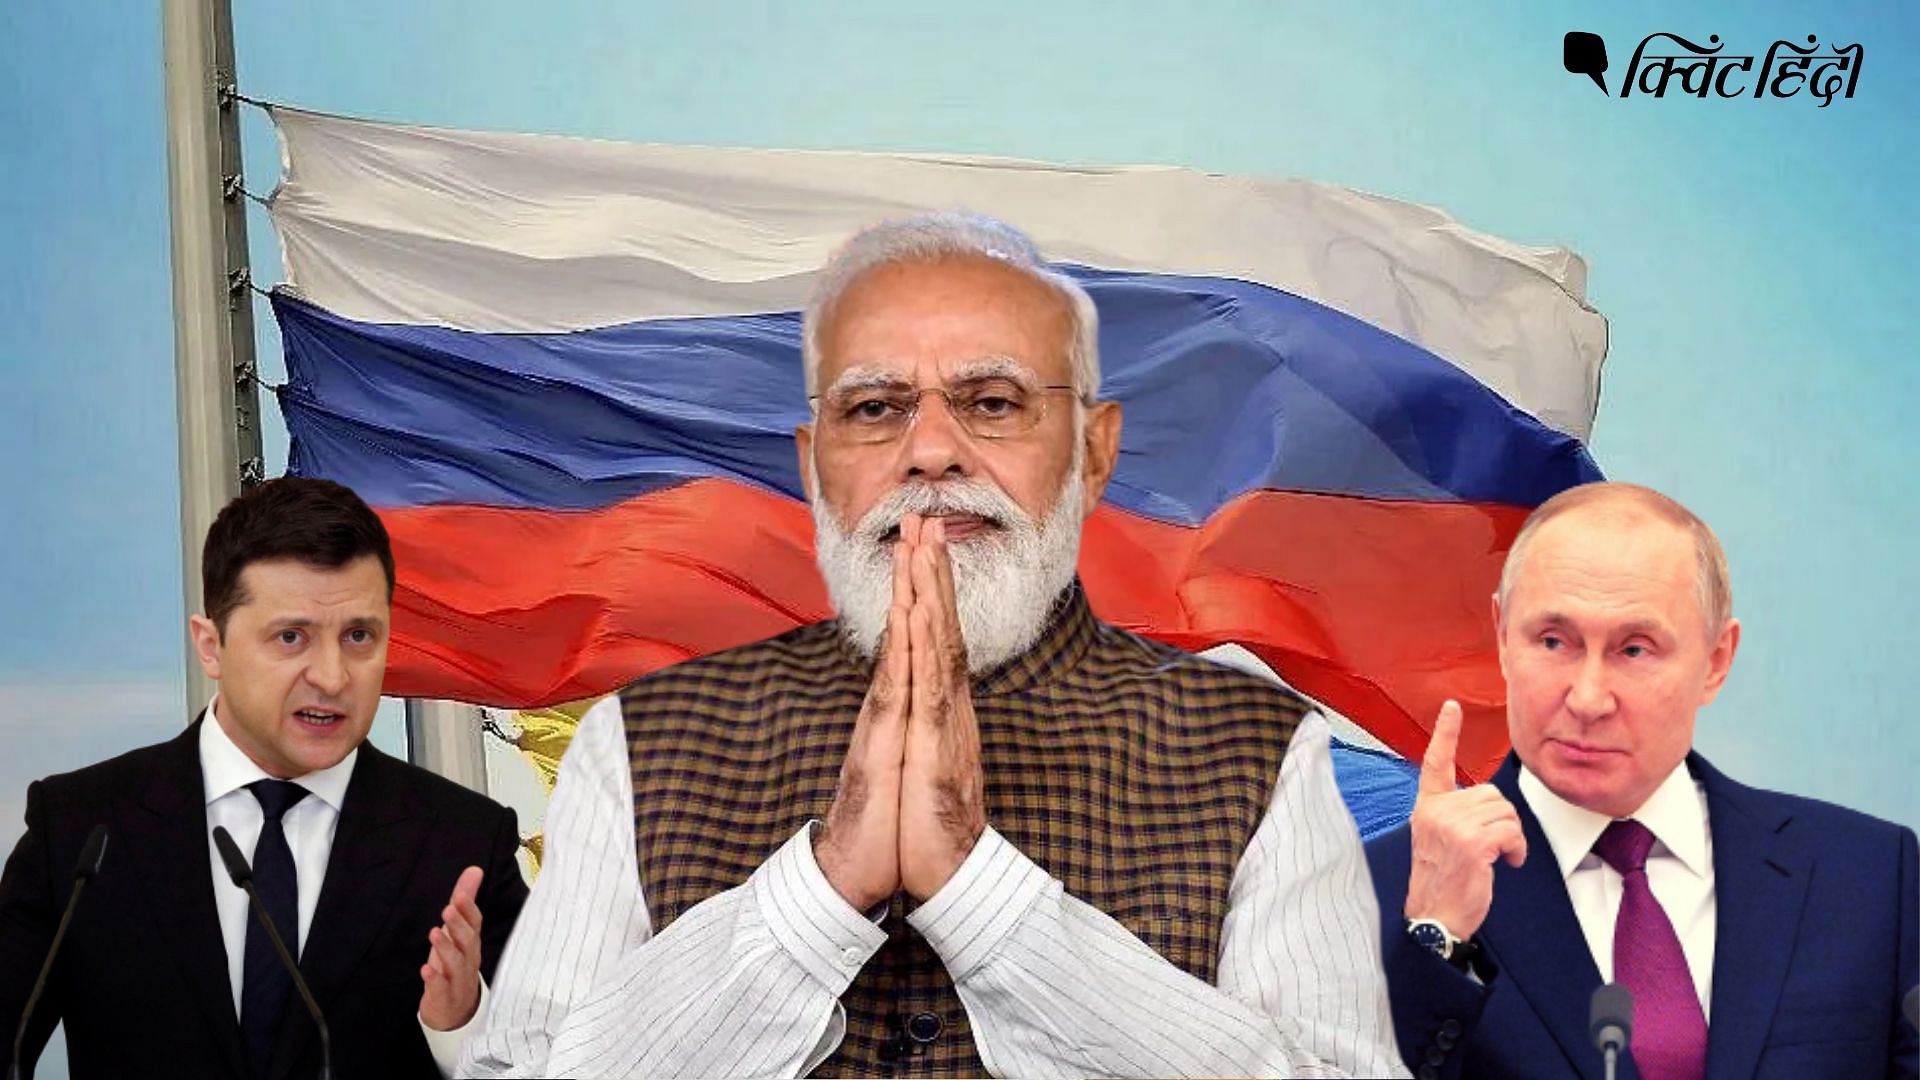 <div class="paragraphs"><p>रूस यूक्रेन विवाद में तटस्थता भारत के मूल्यों के खिलाफ है?</p></div>